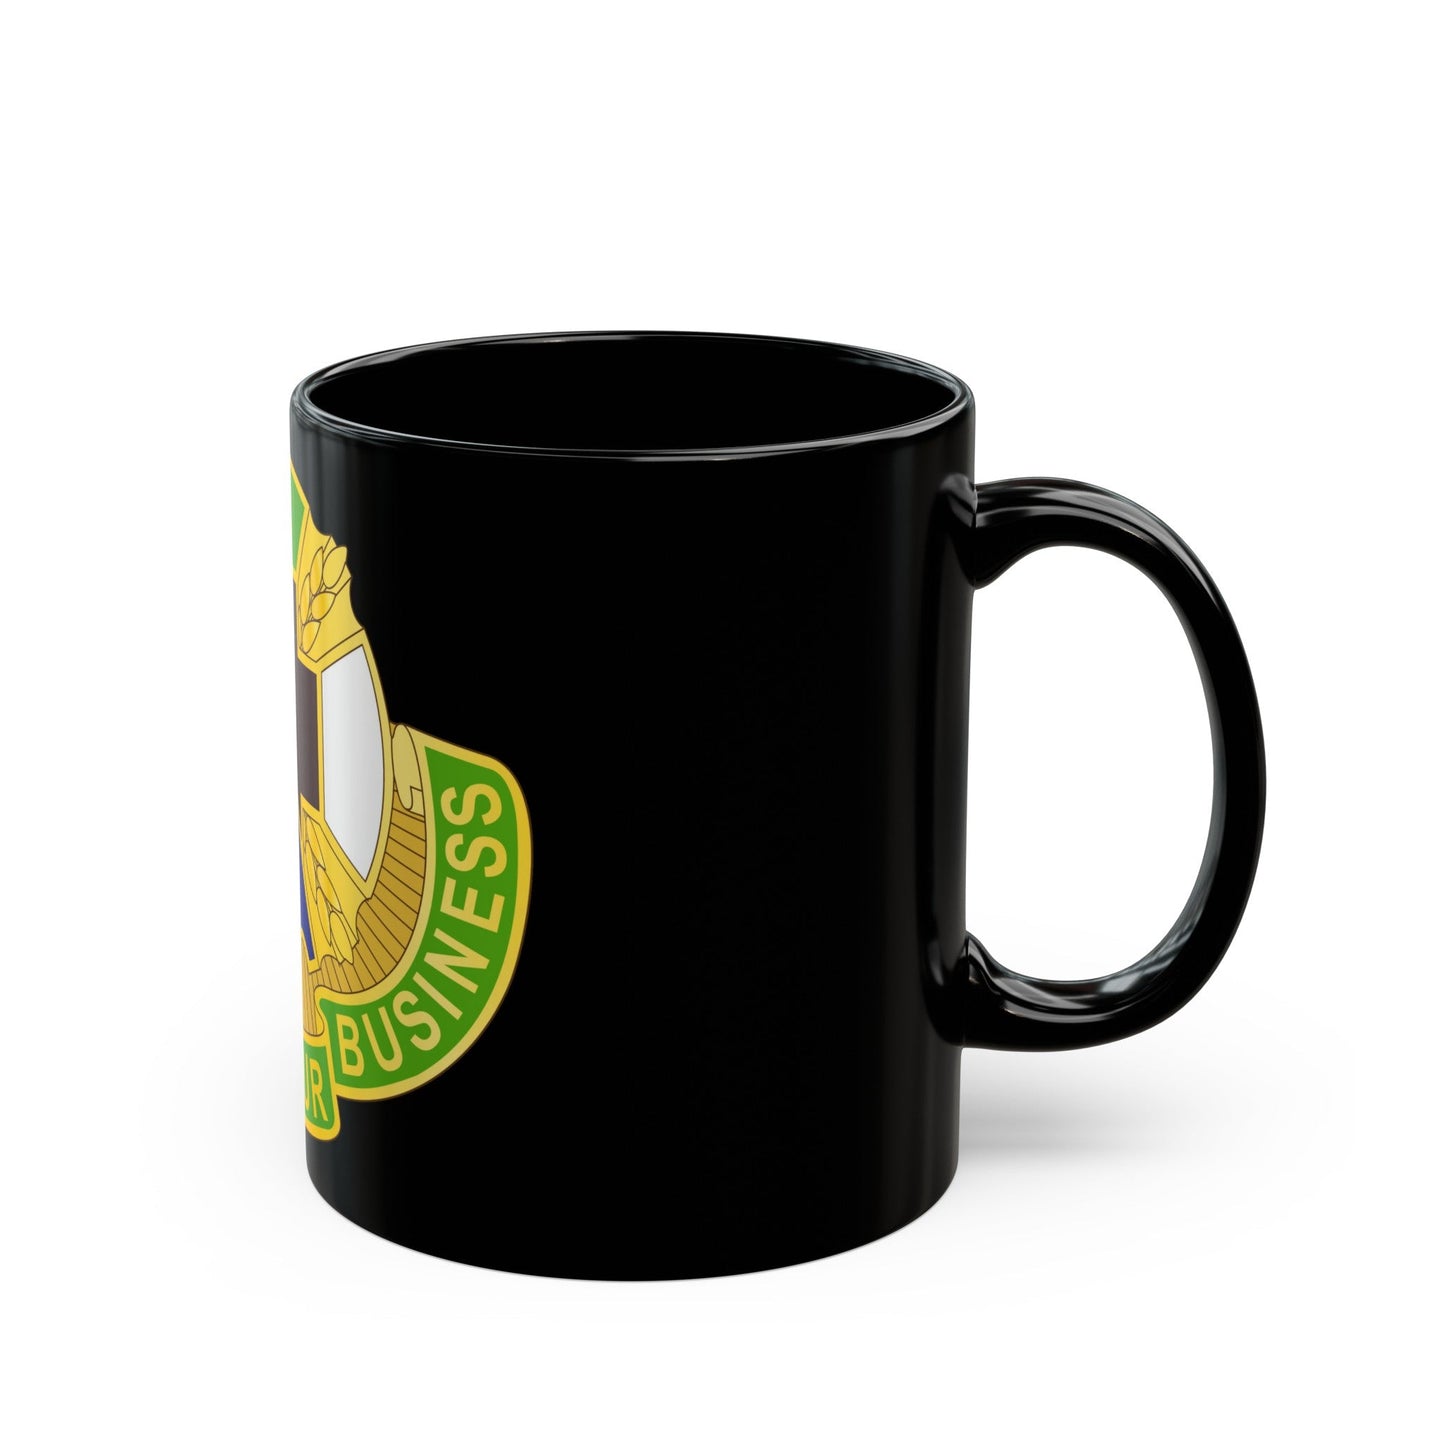 388 Medical Battalion (U.S. Army) Black Coffee Mug